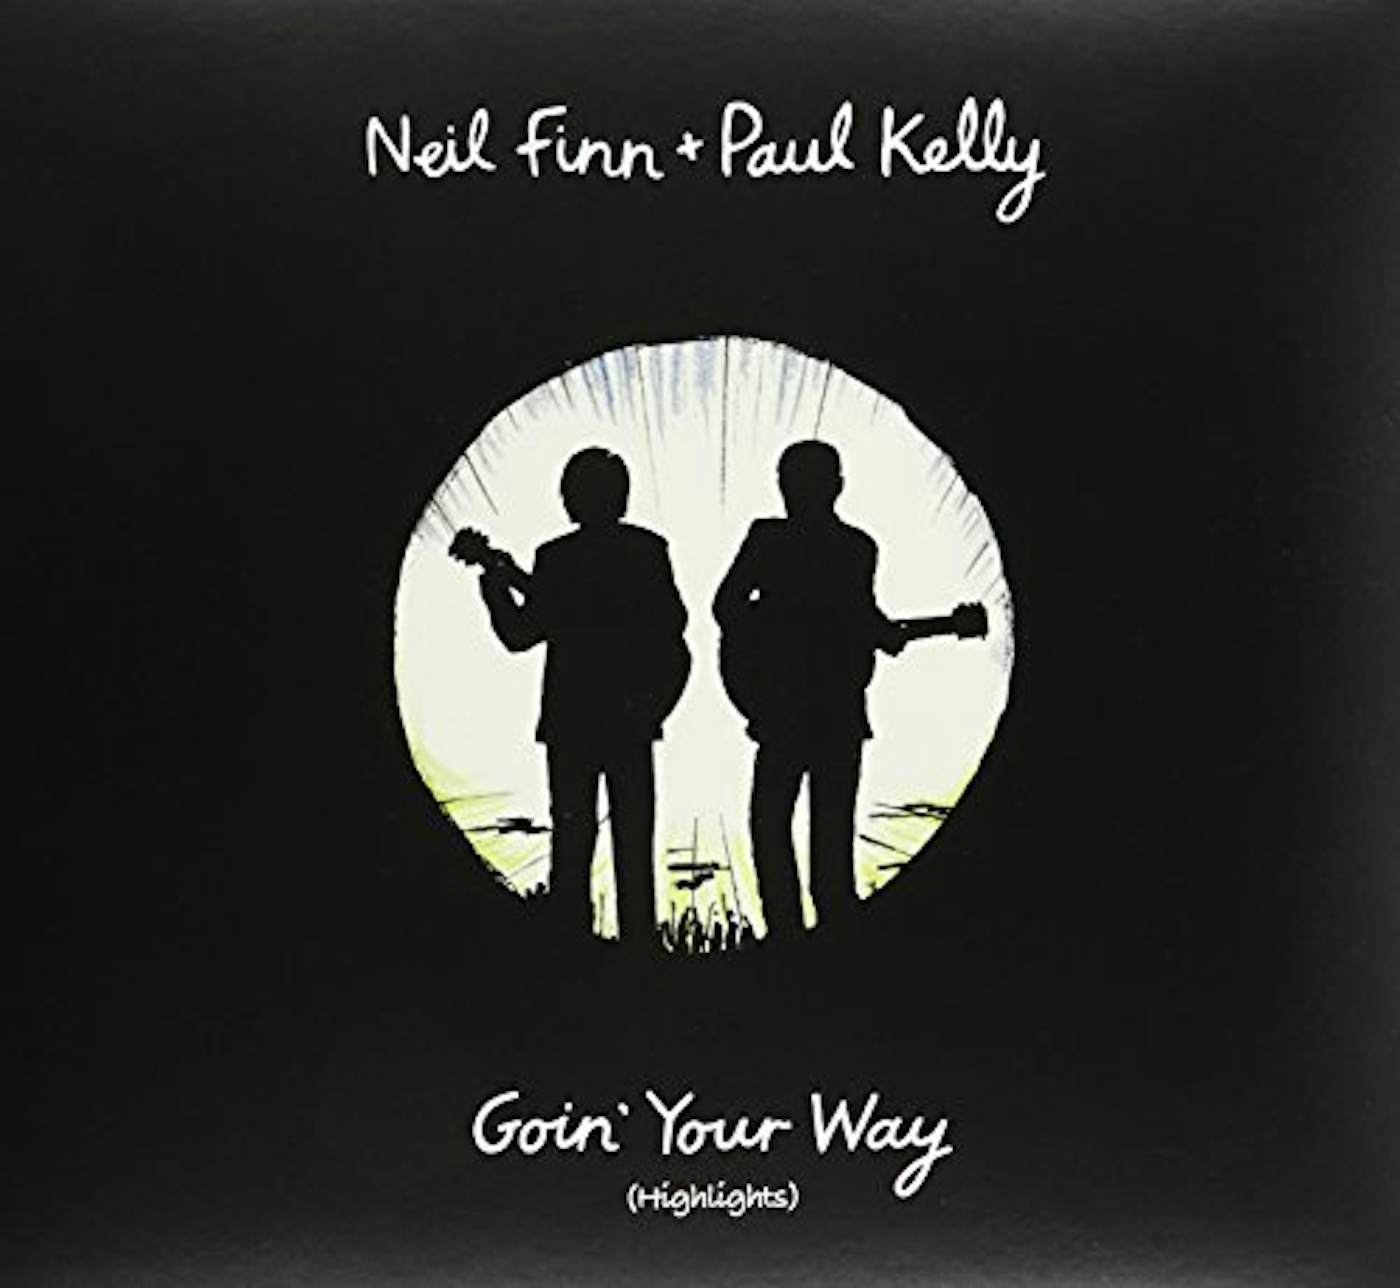 Neil Finn / Paul Kelly